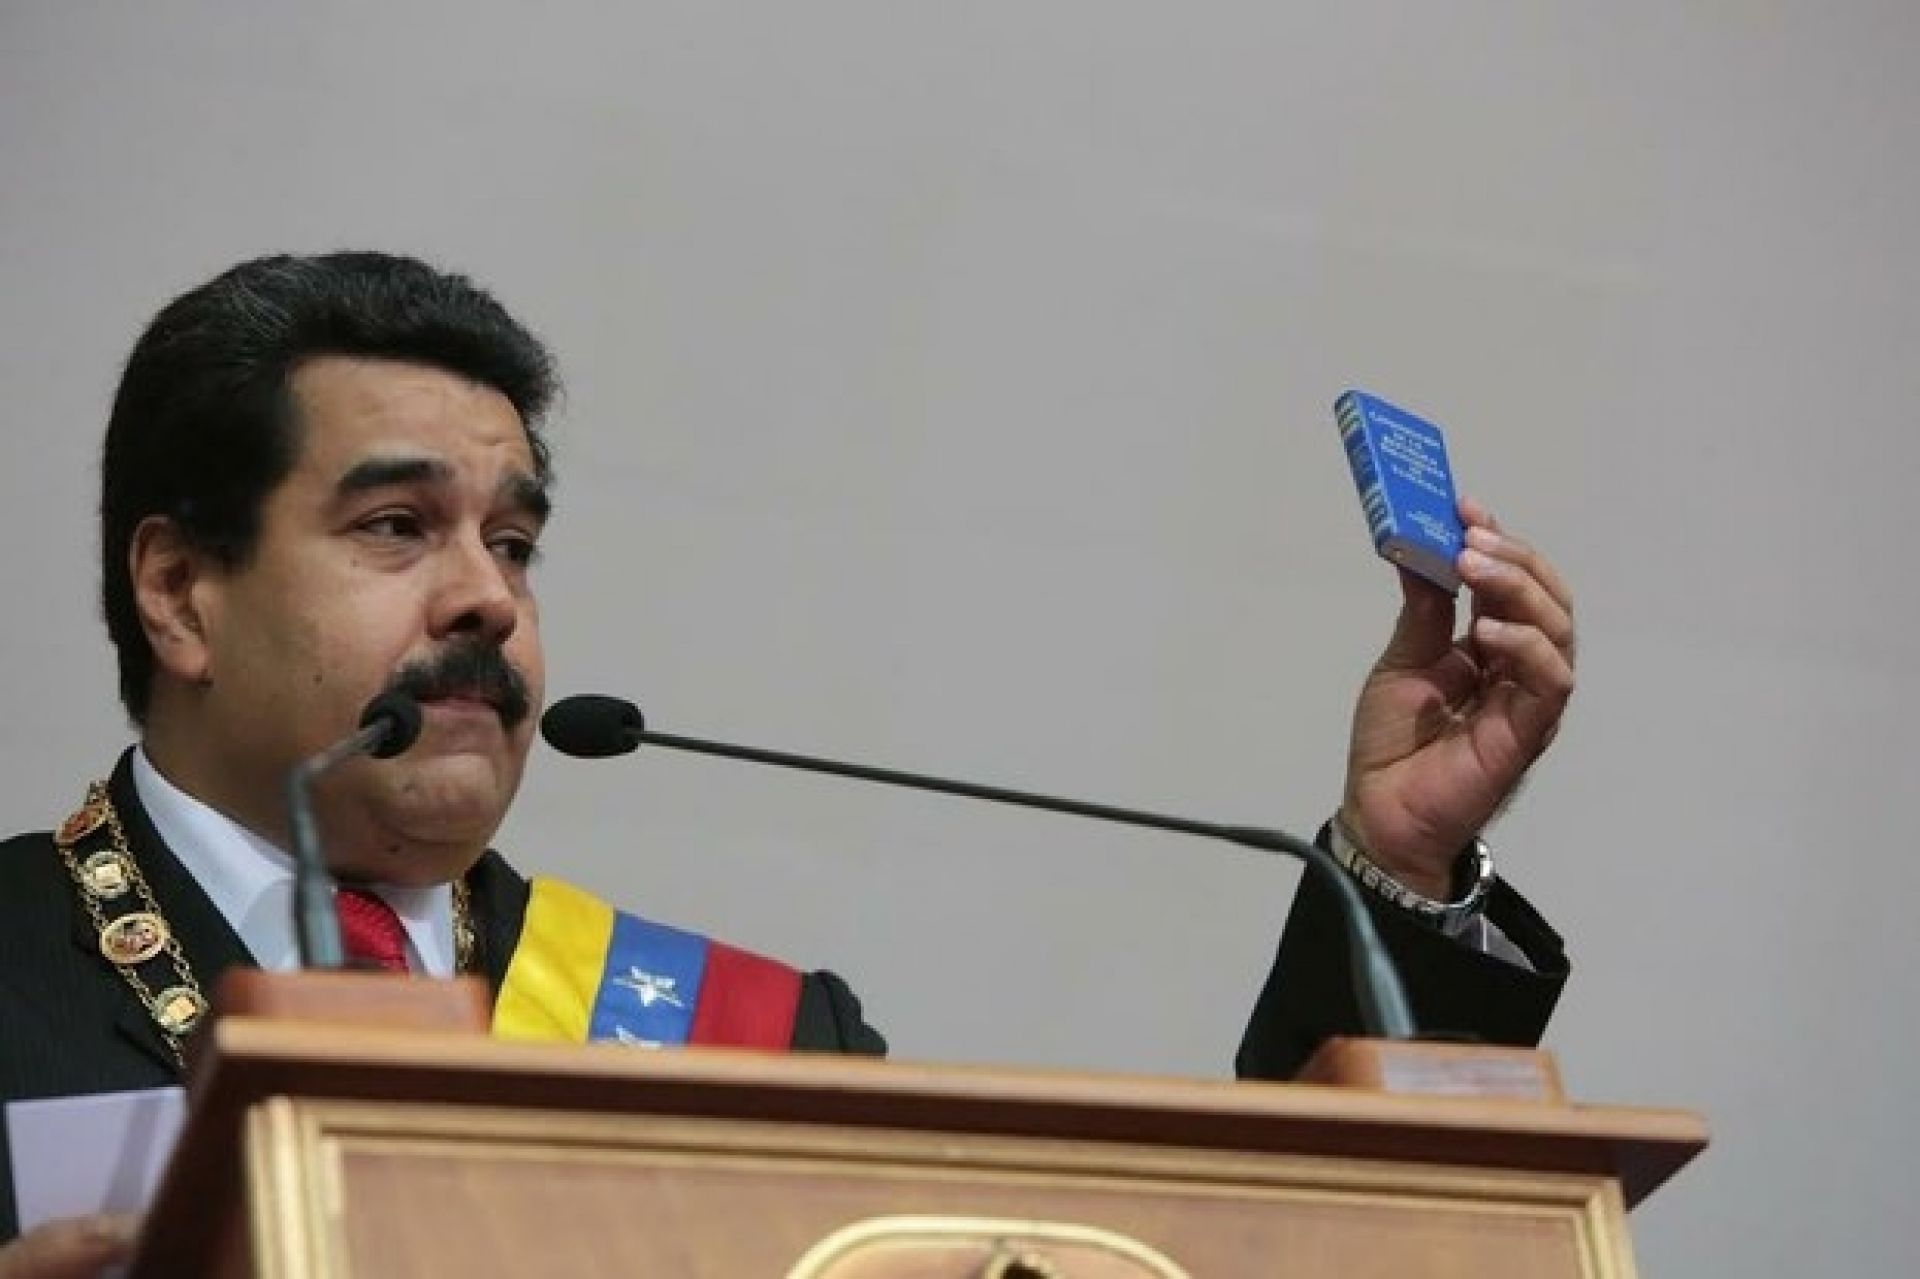 La risposta di Maduro alla crisi in Venezuela